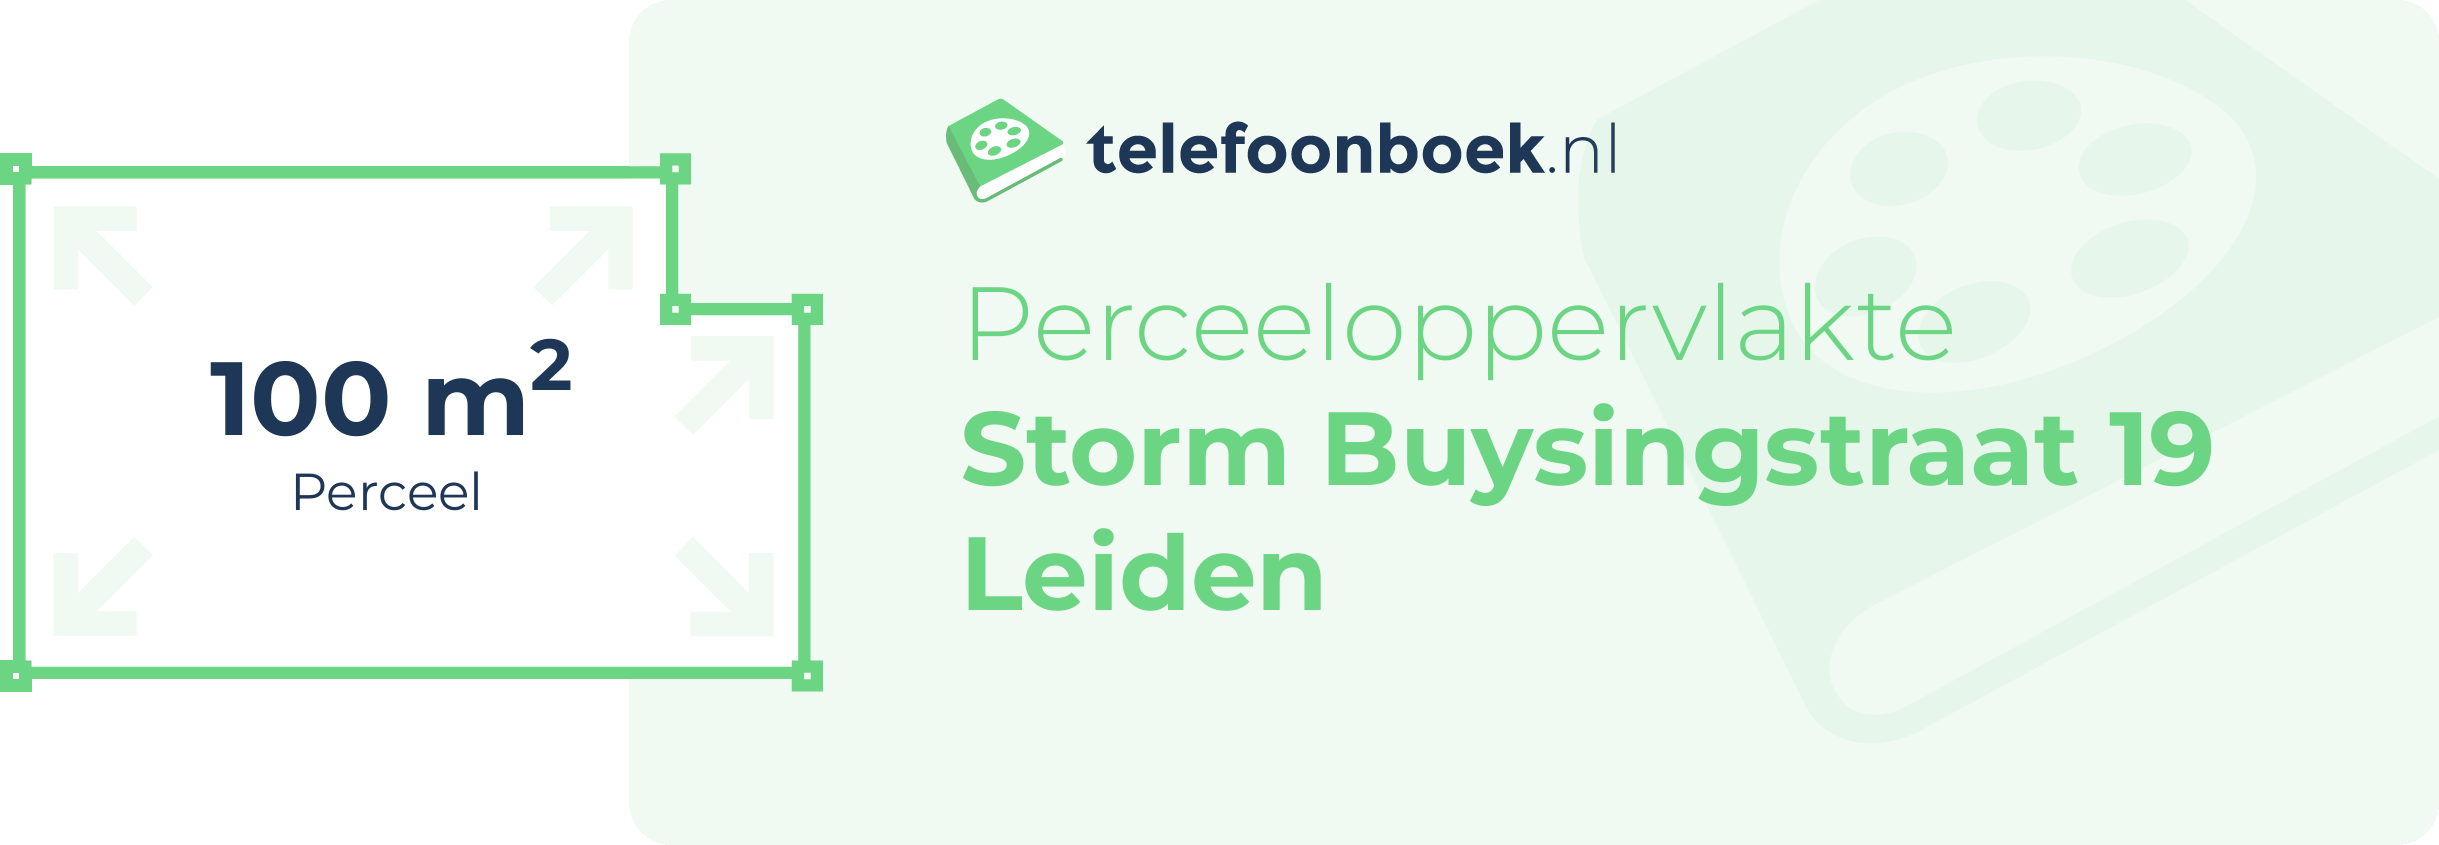 Perceeloppervlakte Storm Buysingstraat 19 Leiden